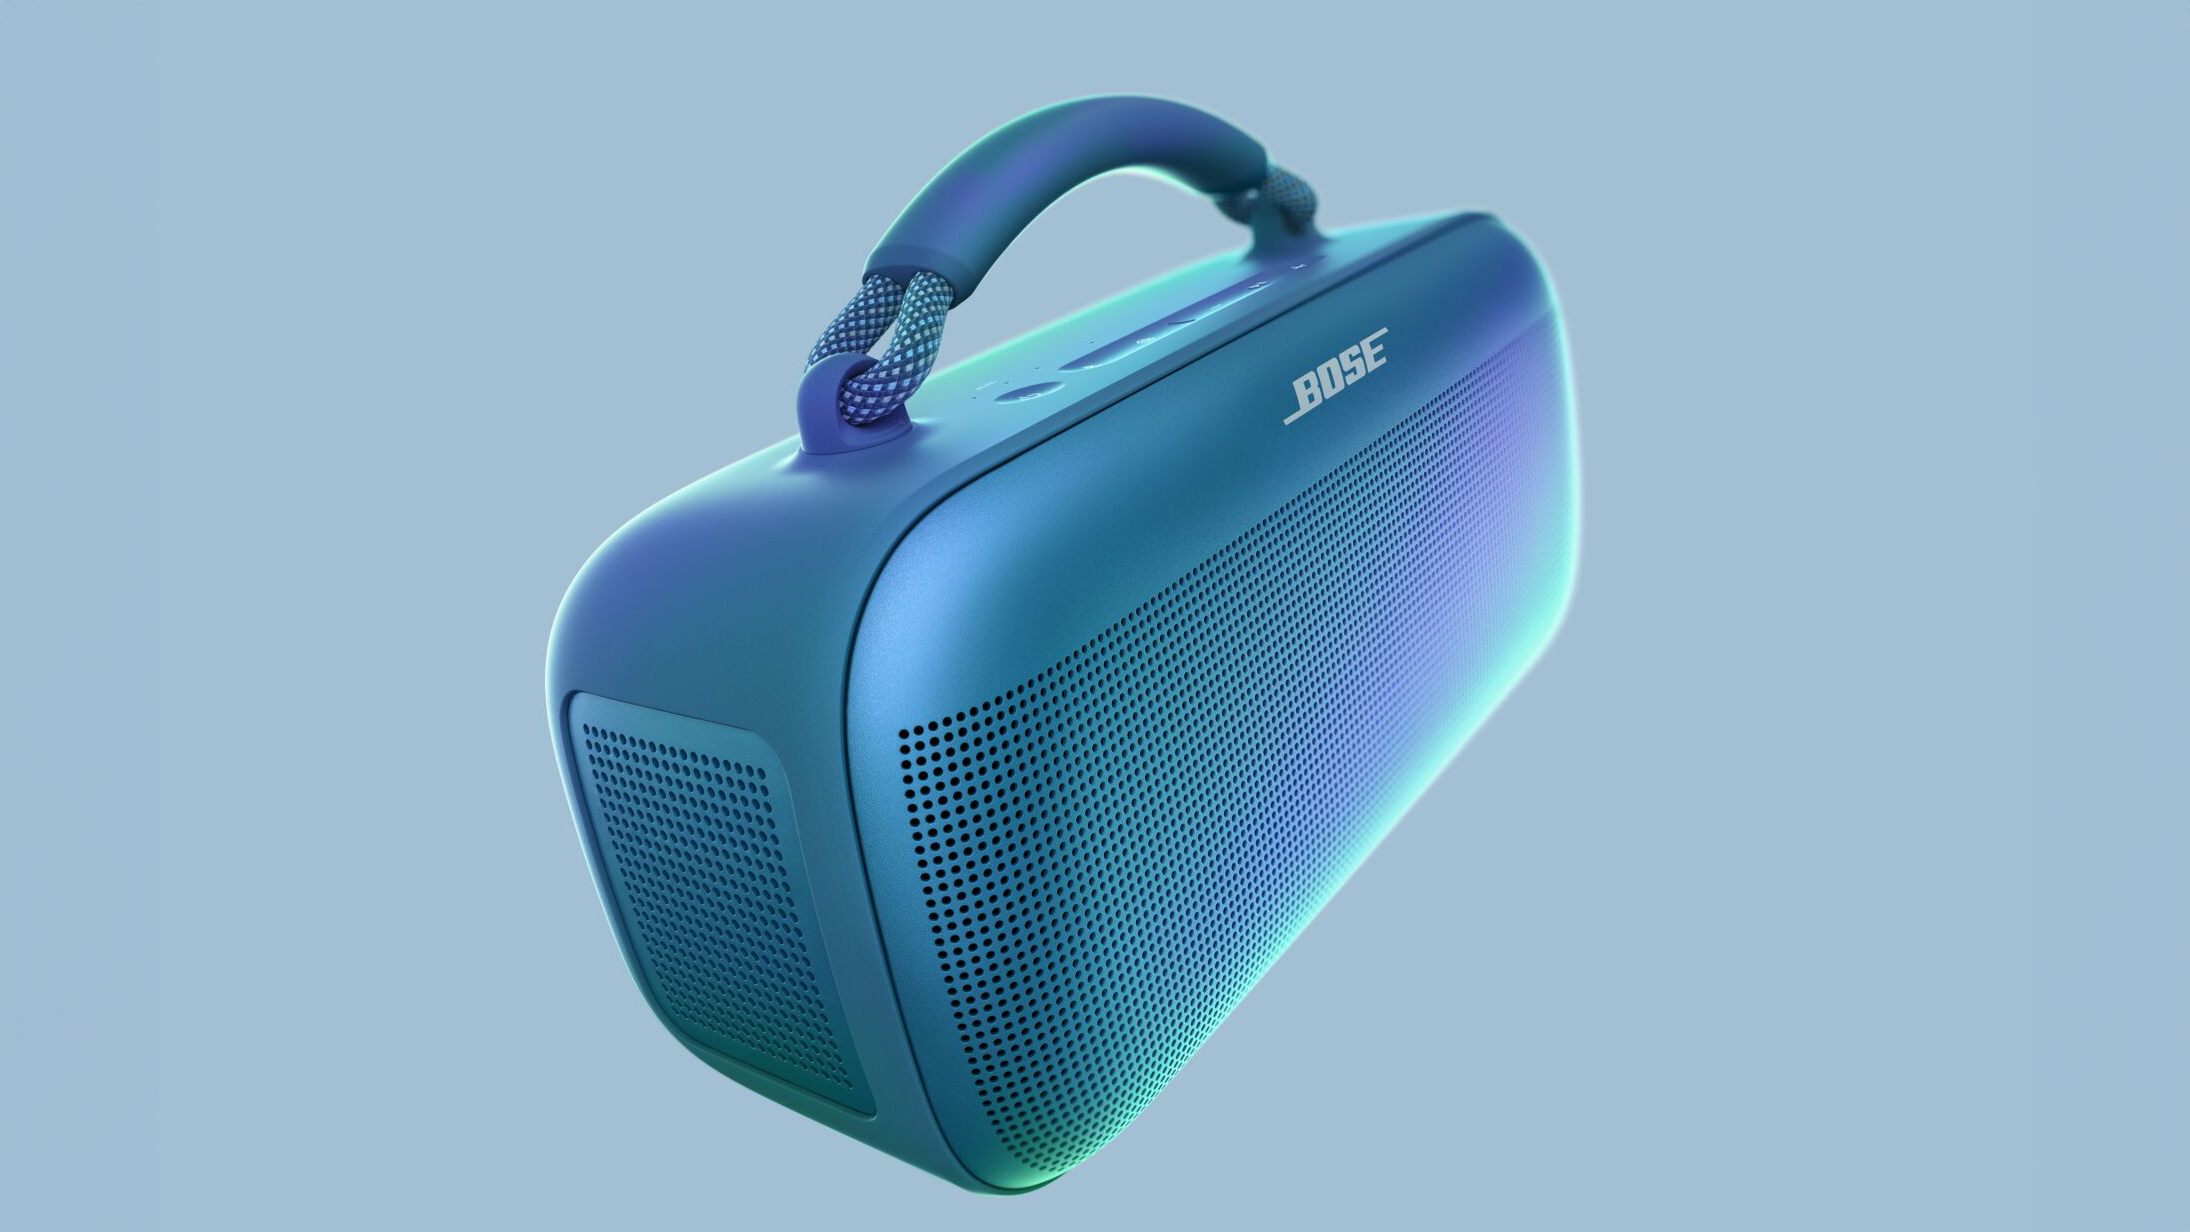 The Bose Динамик SoundLink Max на синем фоне